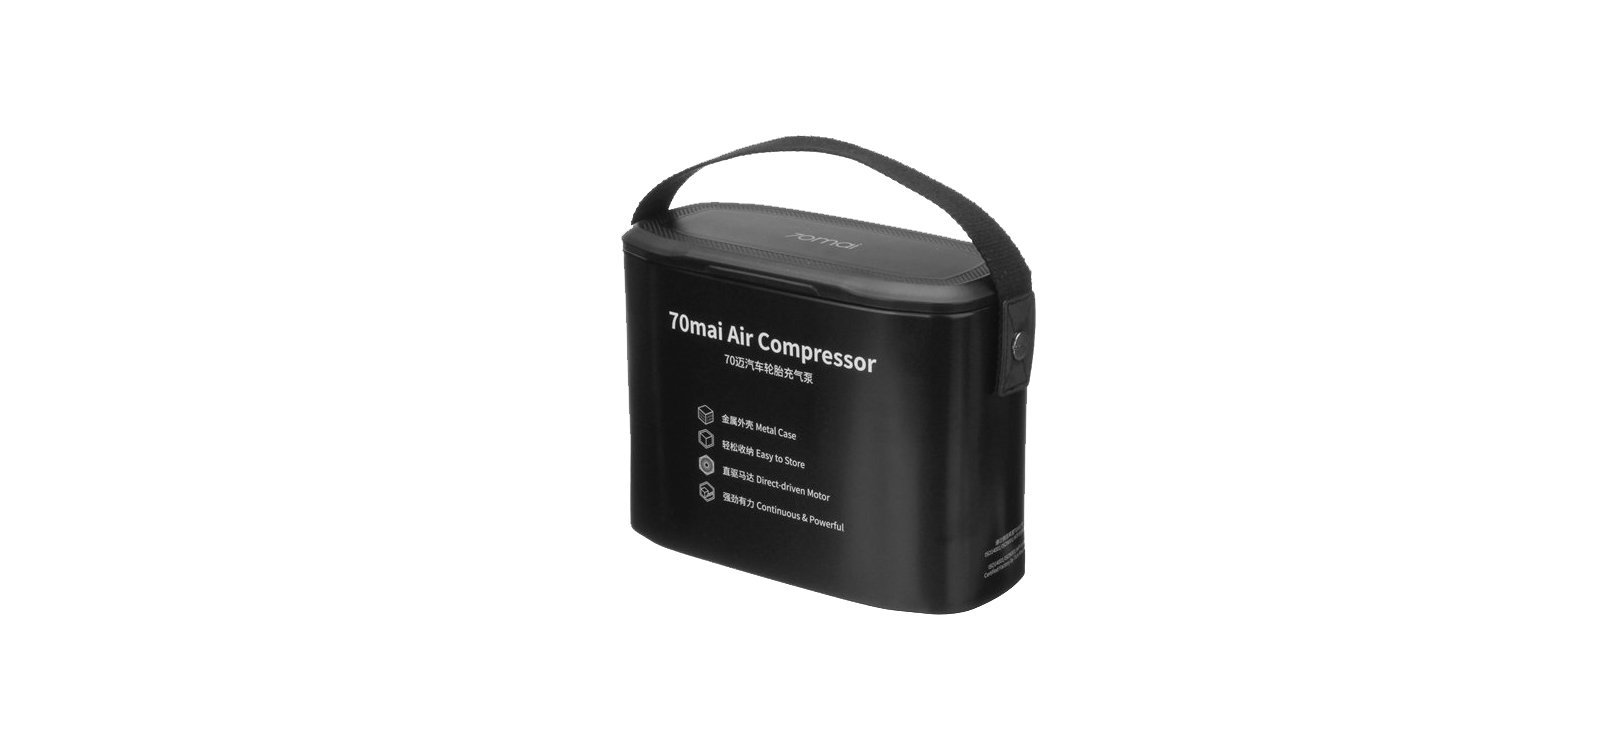 Купить автомобильный компрессор 70mai Air Compressor (Midrive TP01), цены на Мегамаркет | Артикул: 600008547215